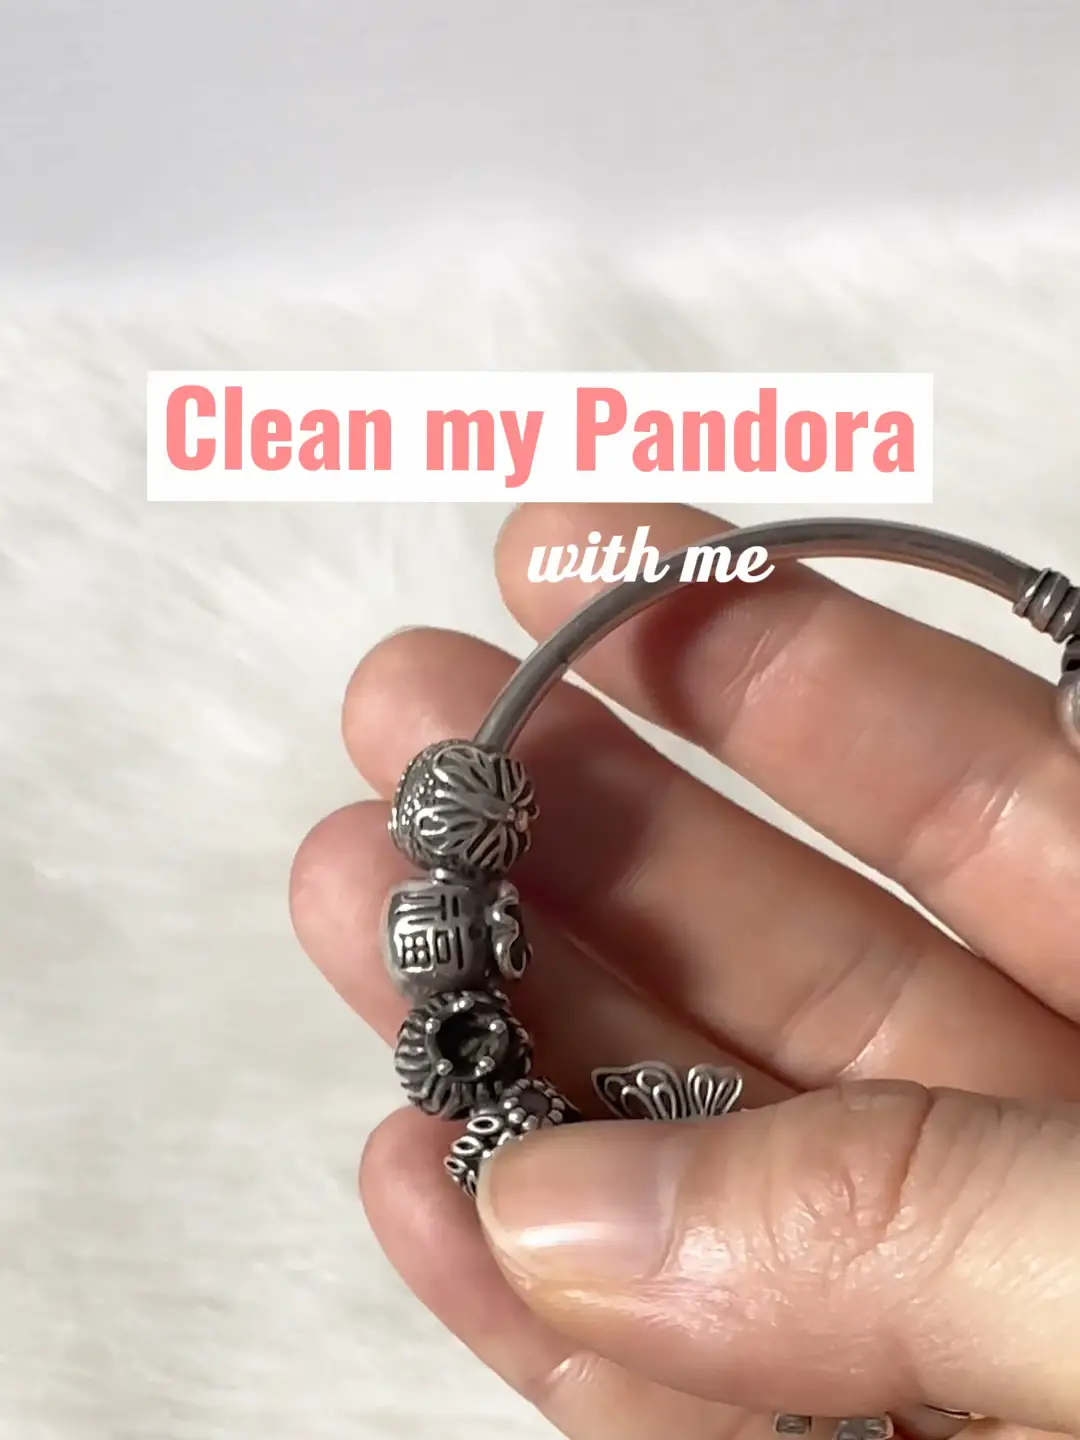 How do I clean my pandora bracelet?